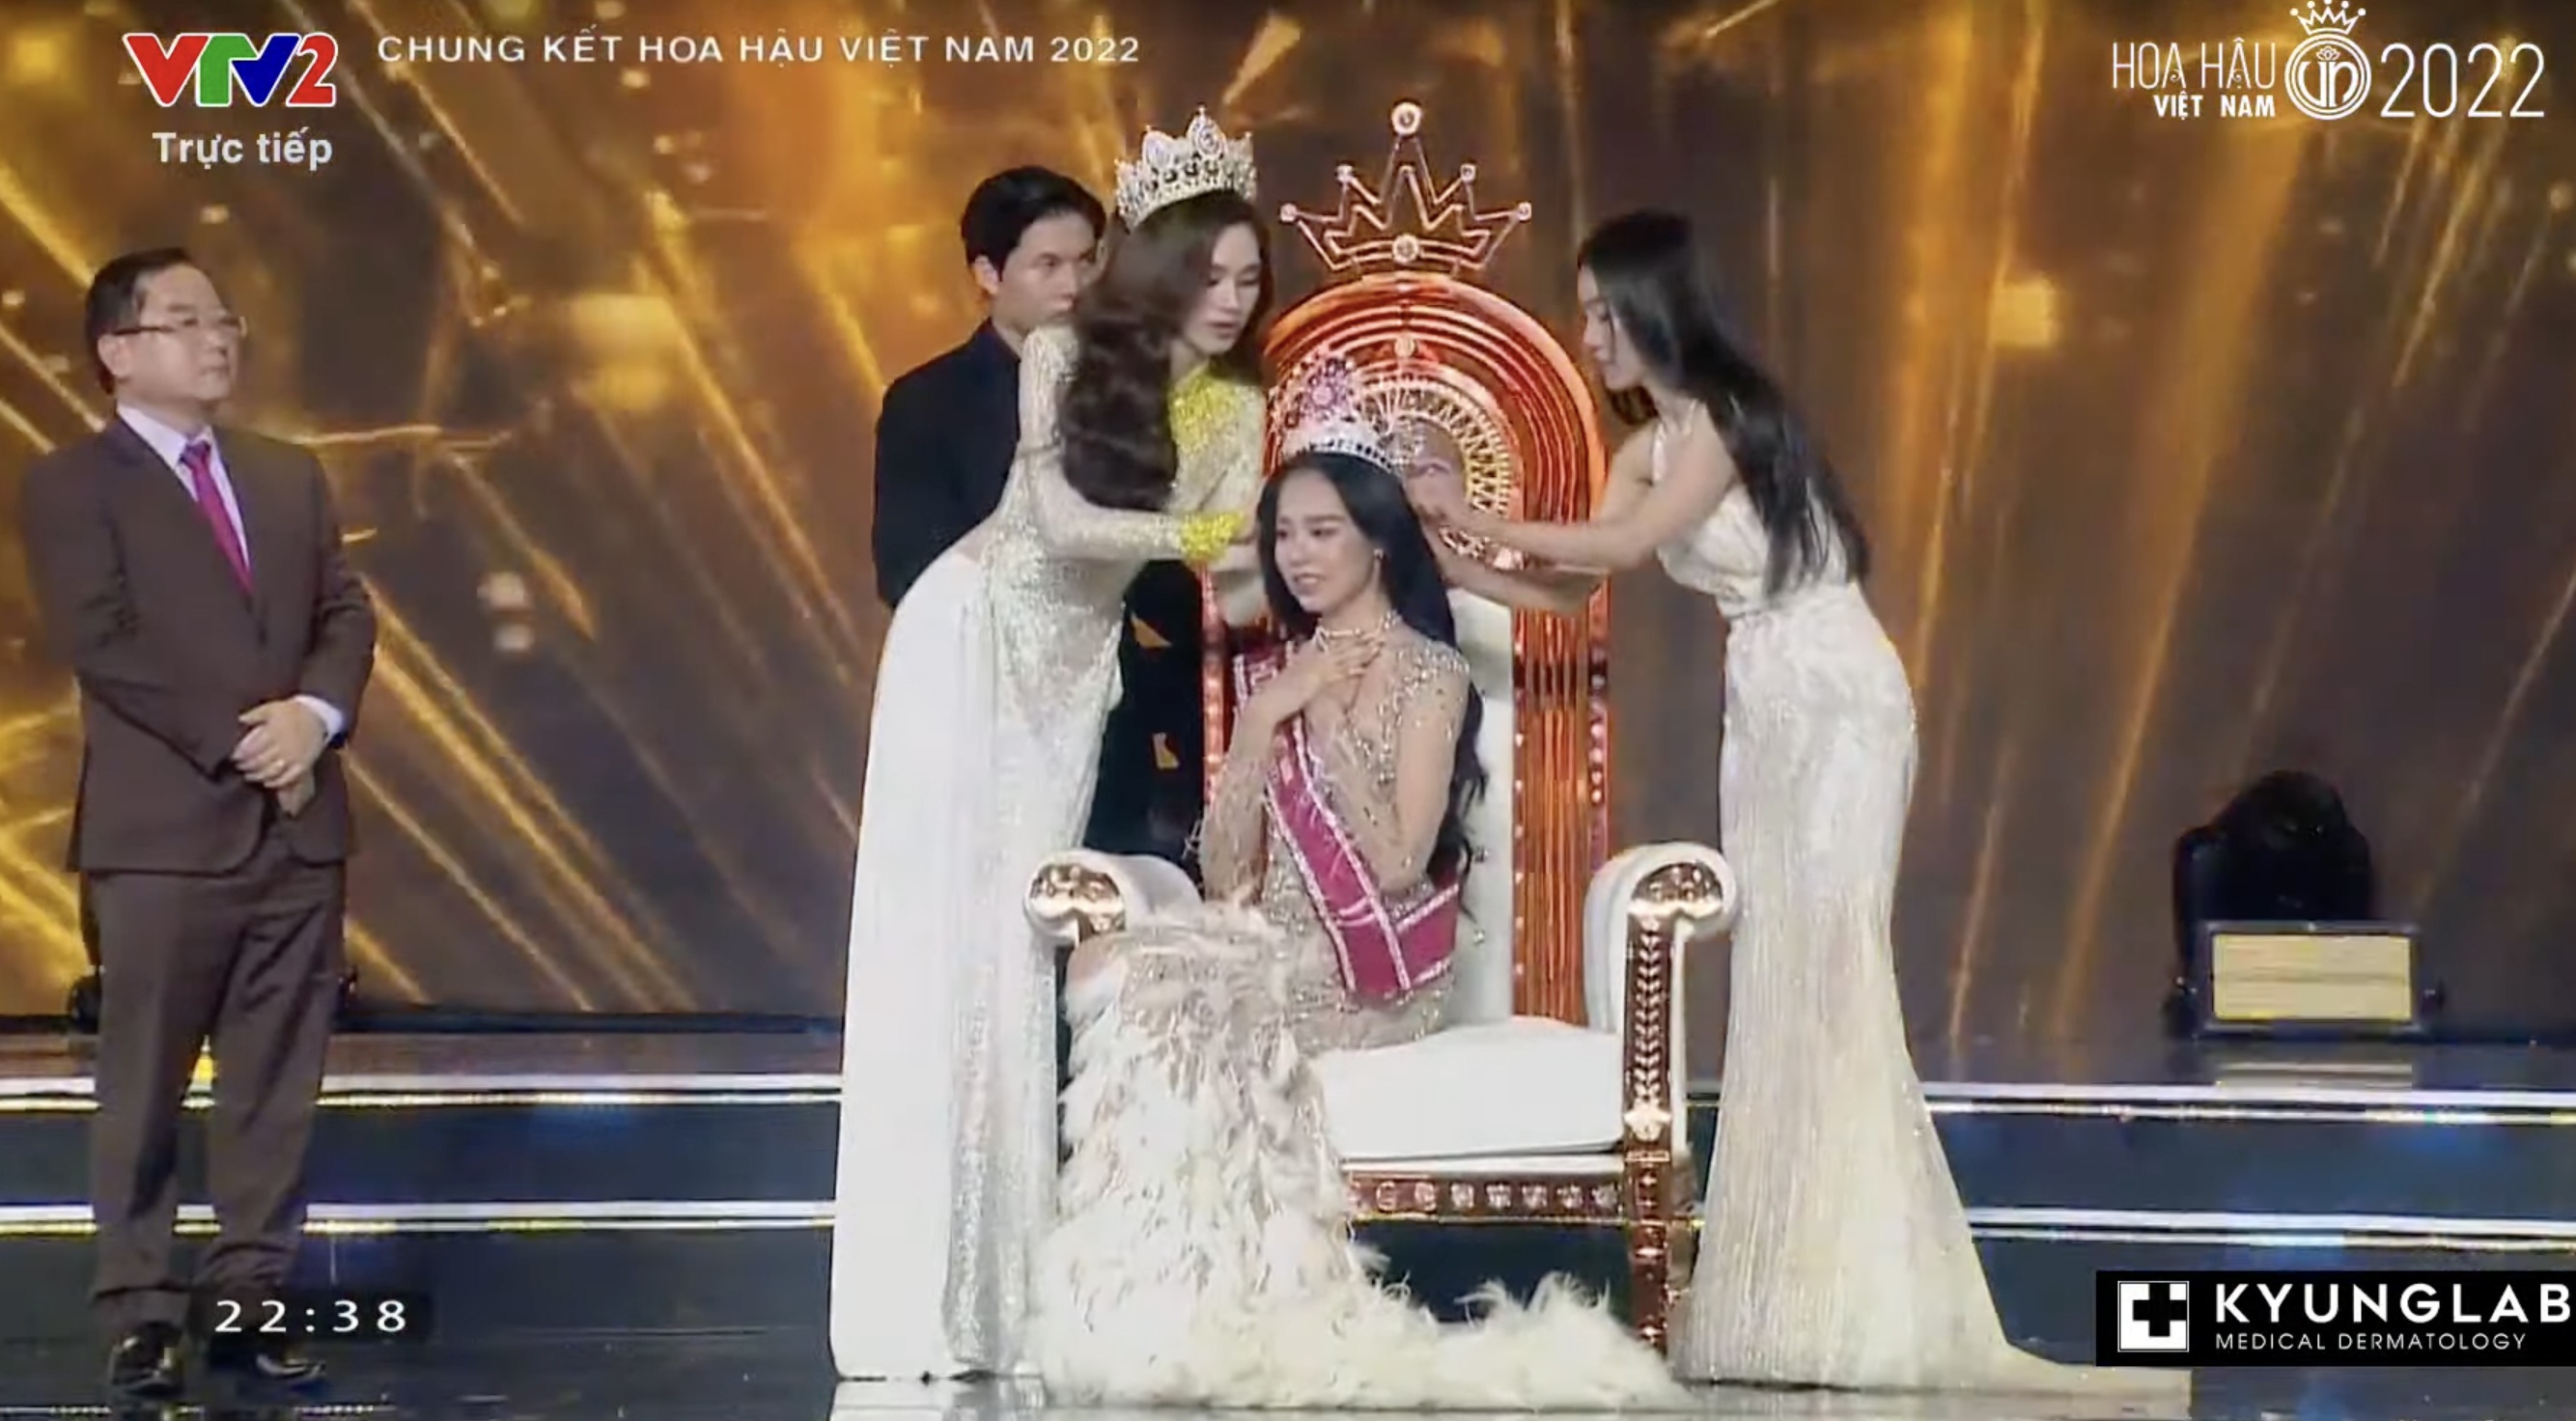 Chung kết Hoa hậu Việt Nam 2022: Tân Hoa hậu chính thức gọi tên Huỳnh Thị Thanh Thuỷ - 5